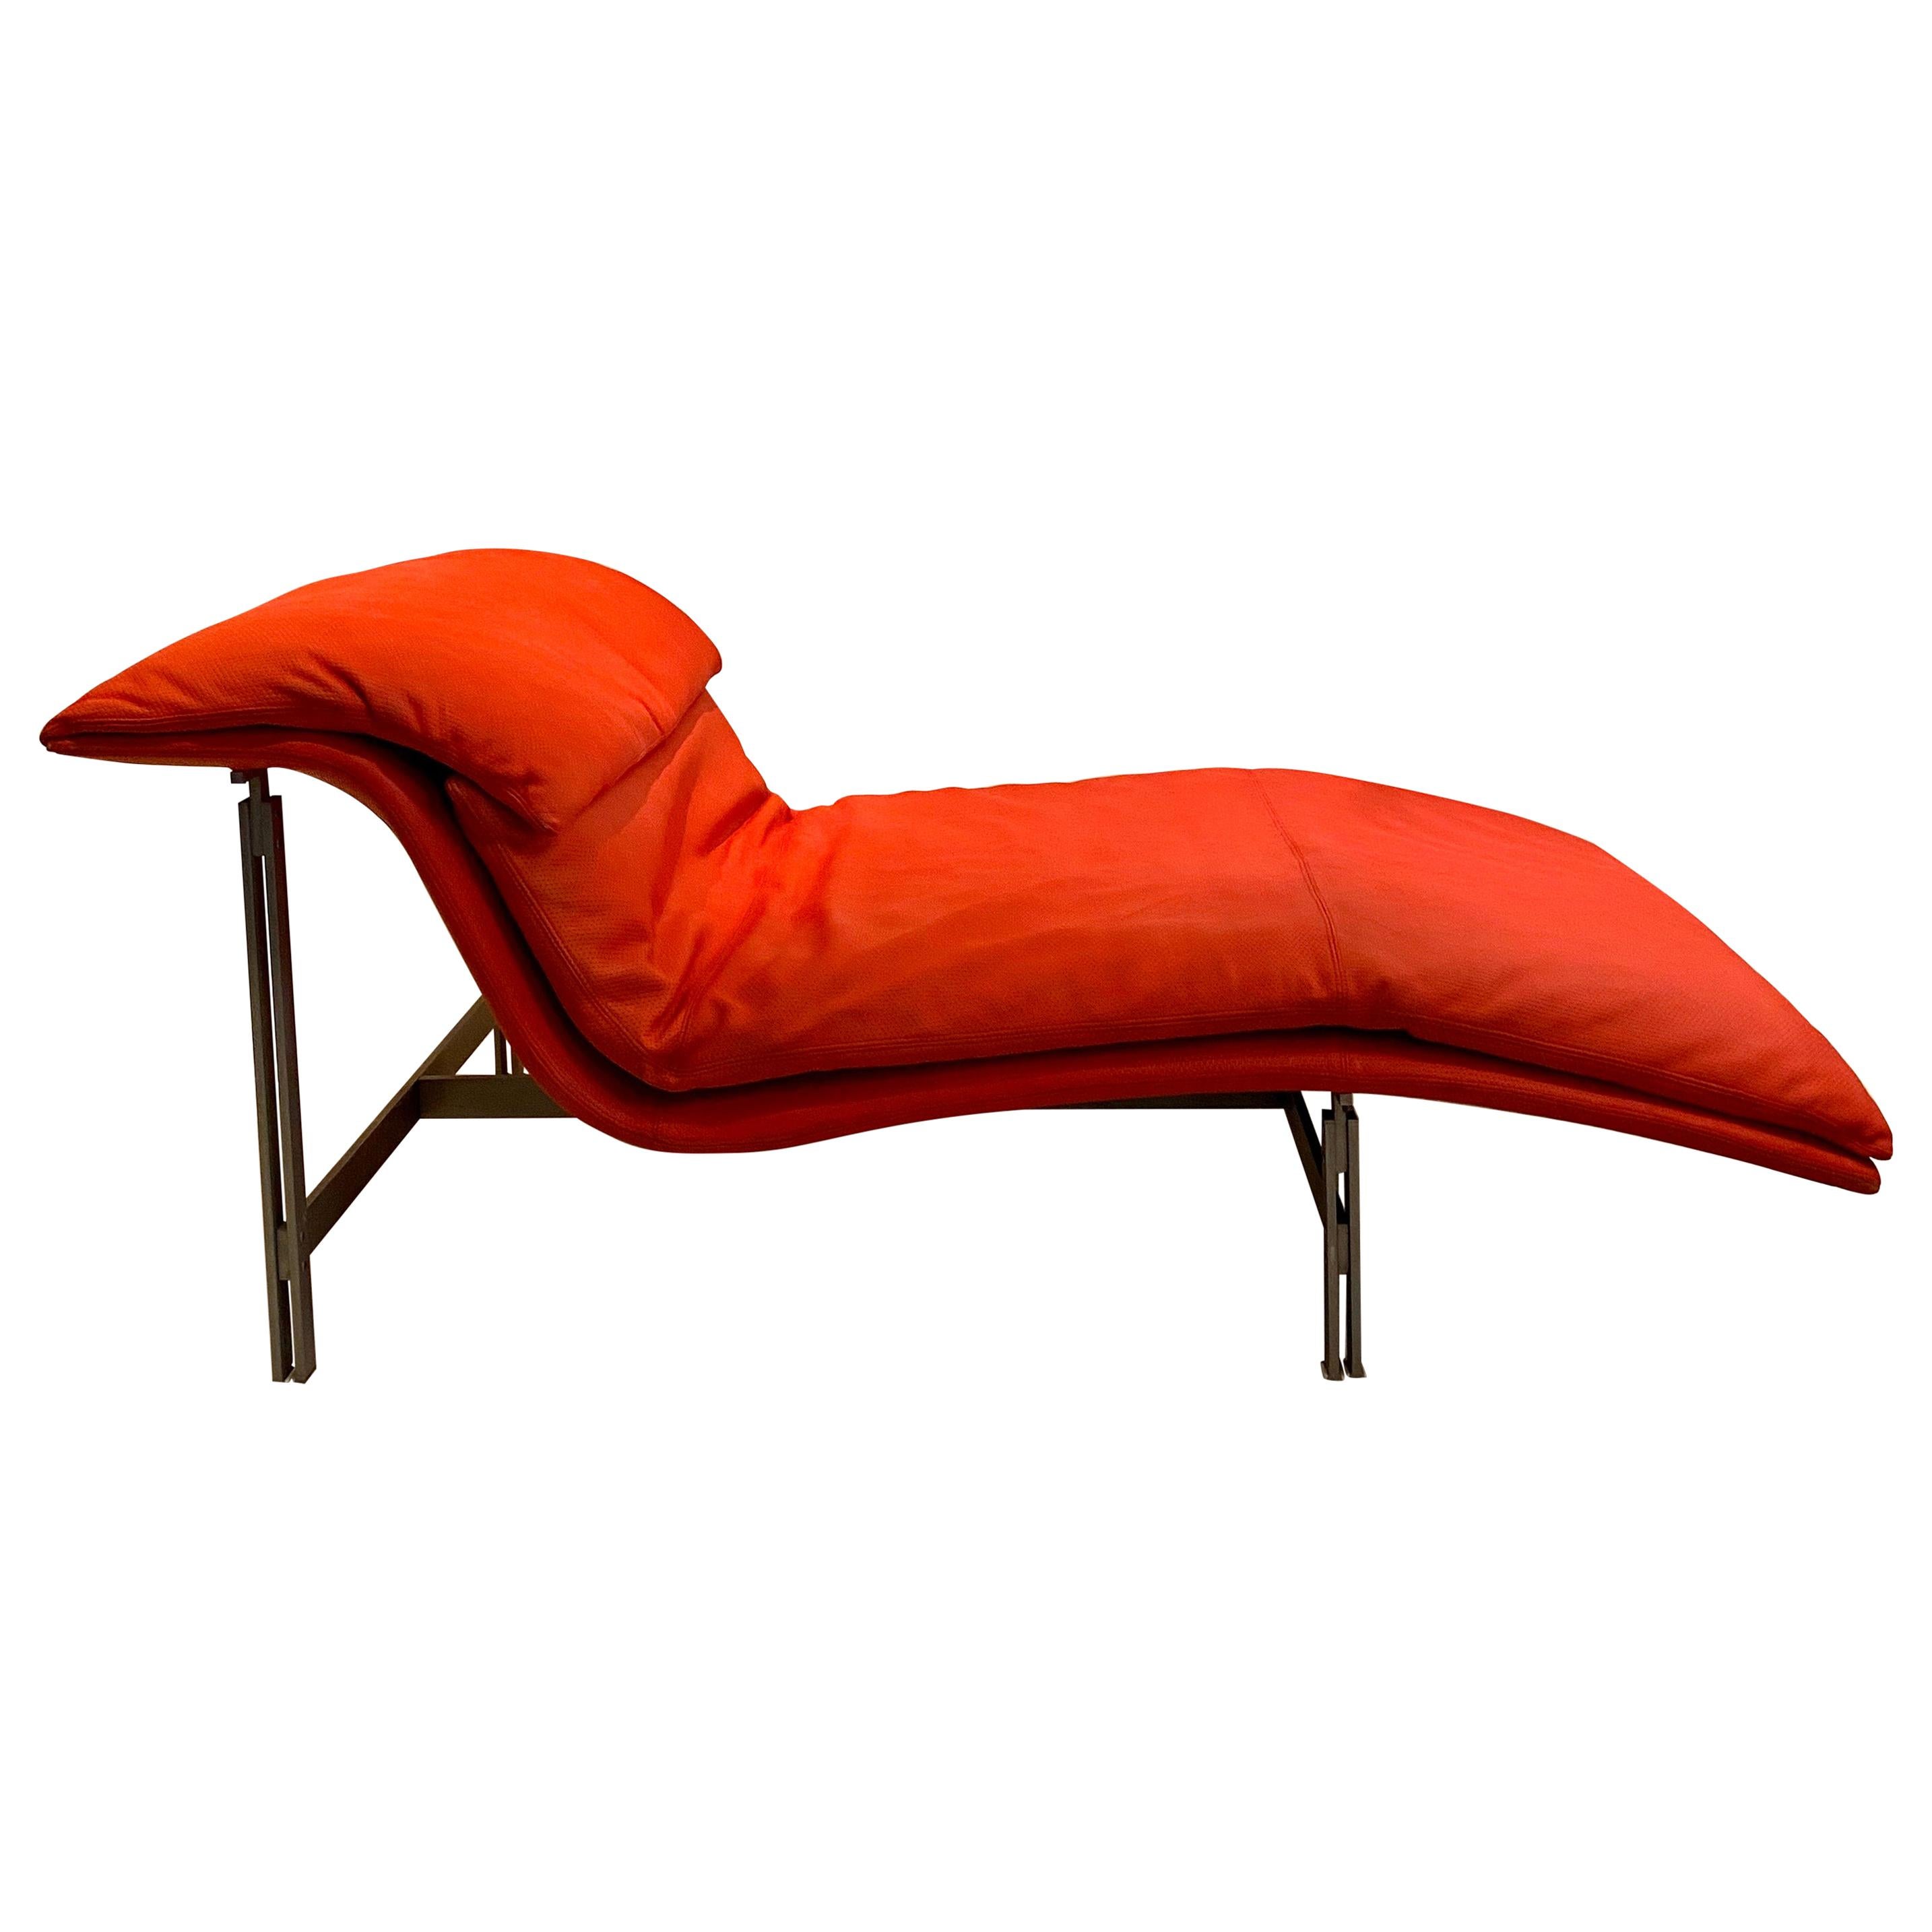 Giovanni Offredi “Wave” Lounge Chair for Saporiti, 1974